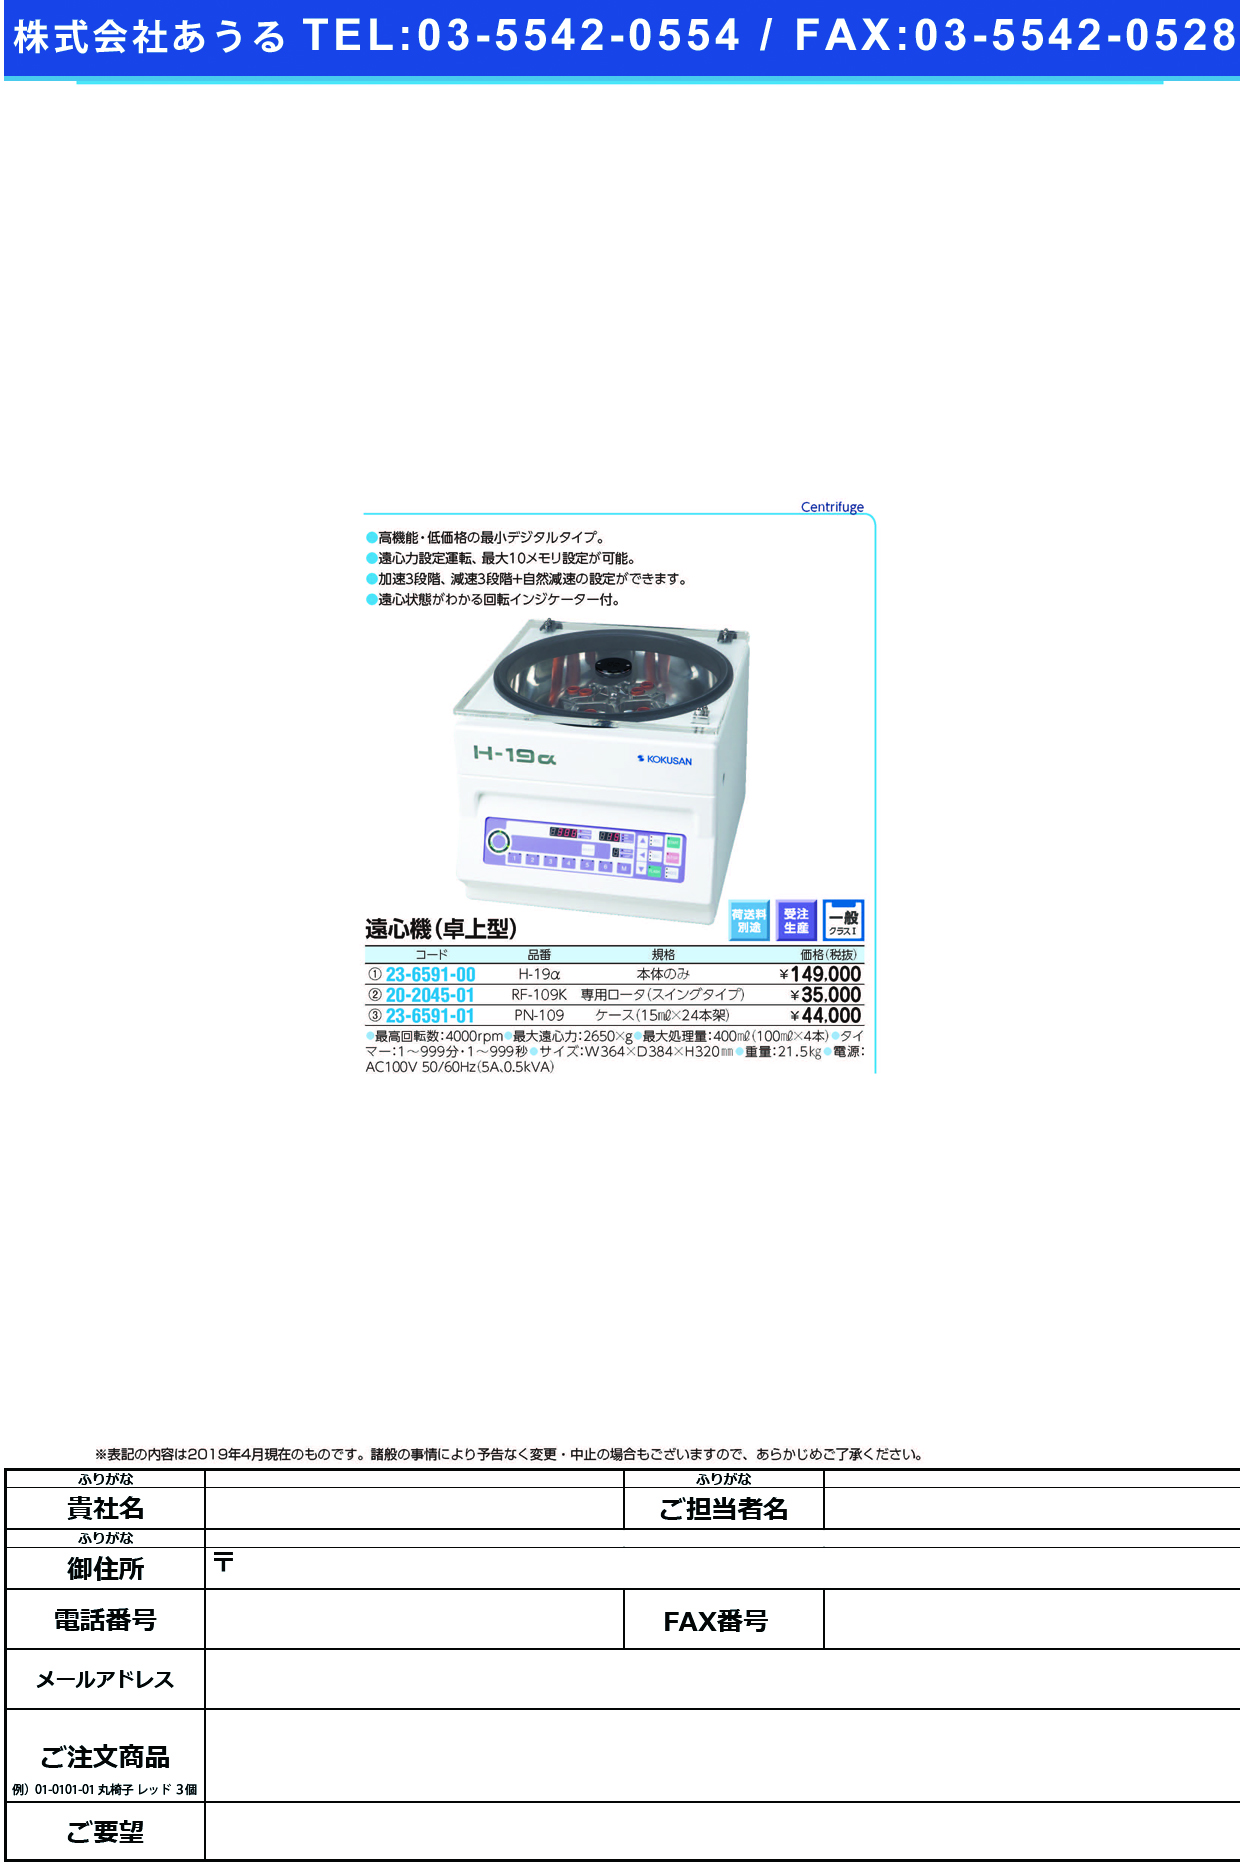 (23-6591-00)小型卓上遠心機 H-19A ｺｶﾞﾀﾀｸｼﾞｮｳｴﾝｼﾝｷ【1台単位】【2019年カタログ商品】